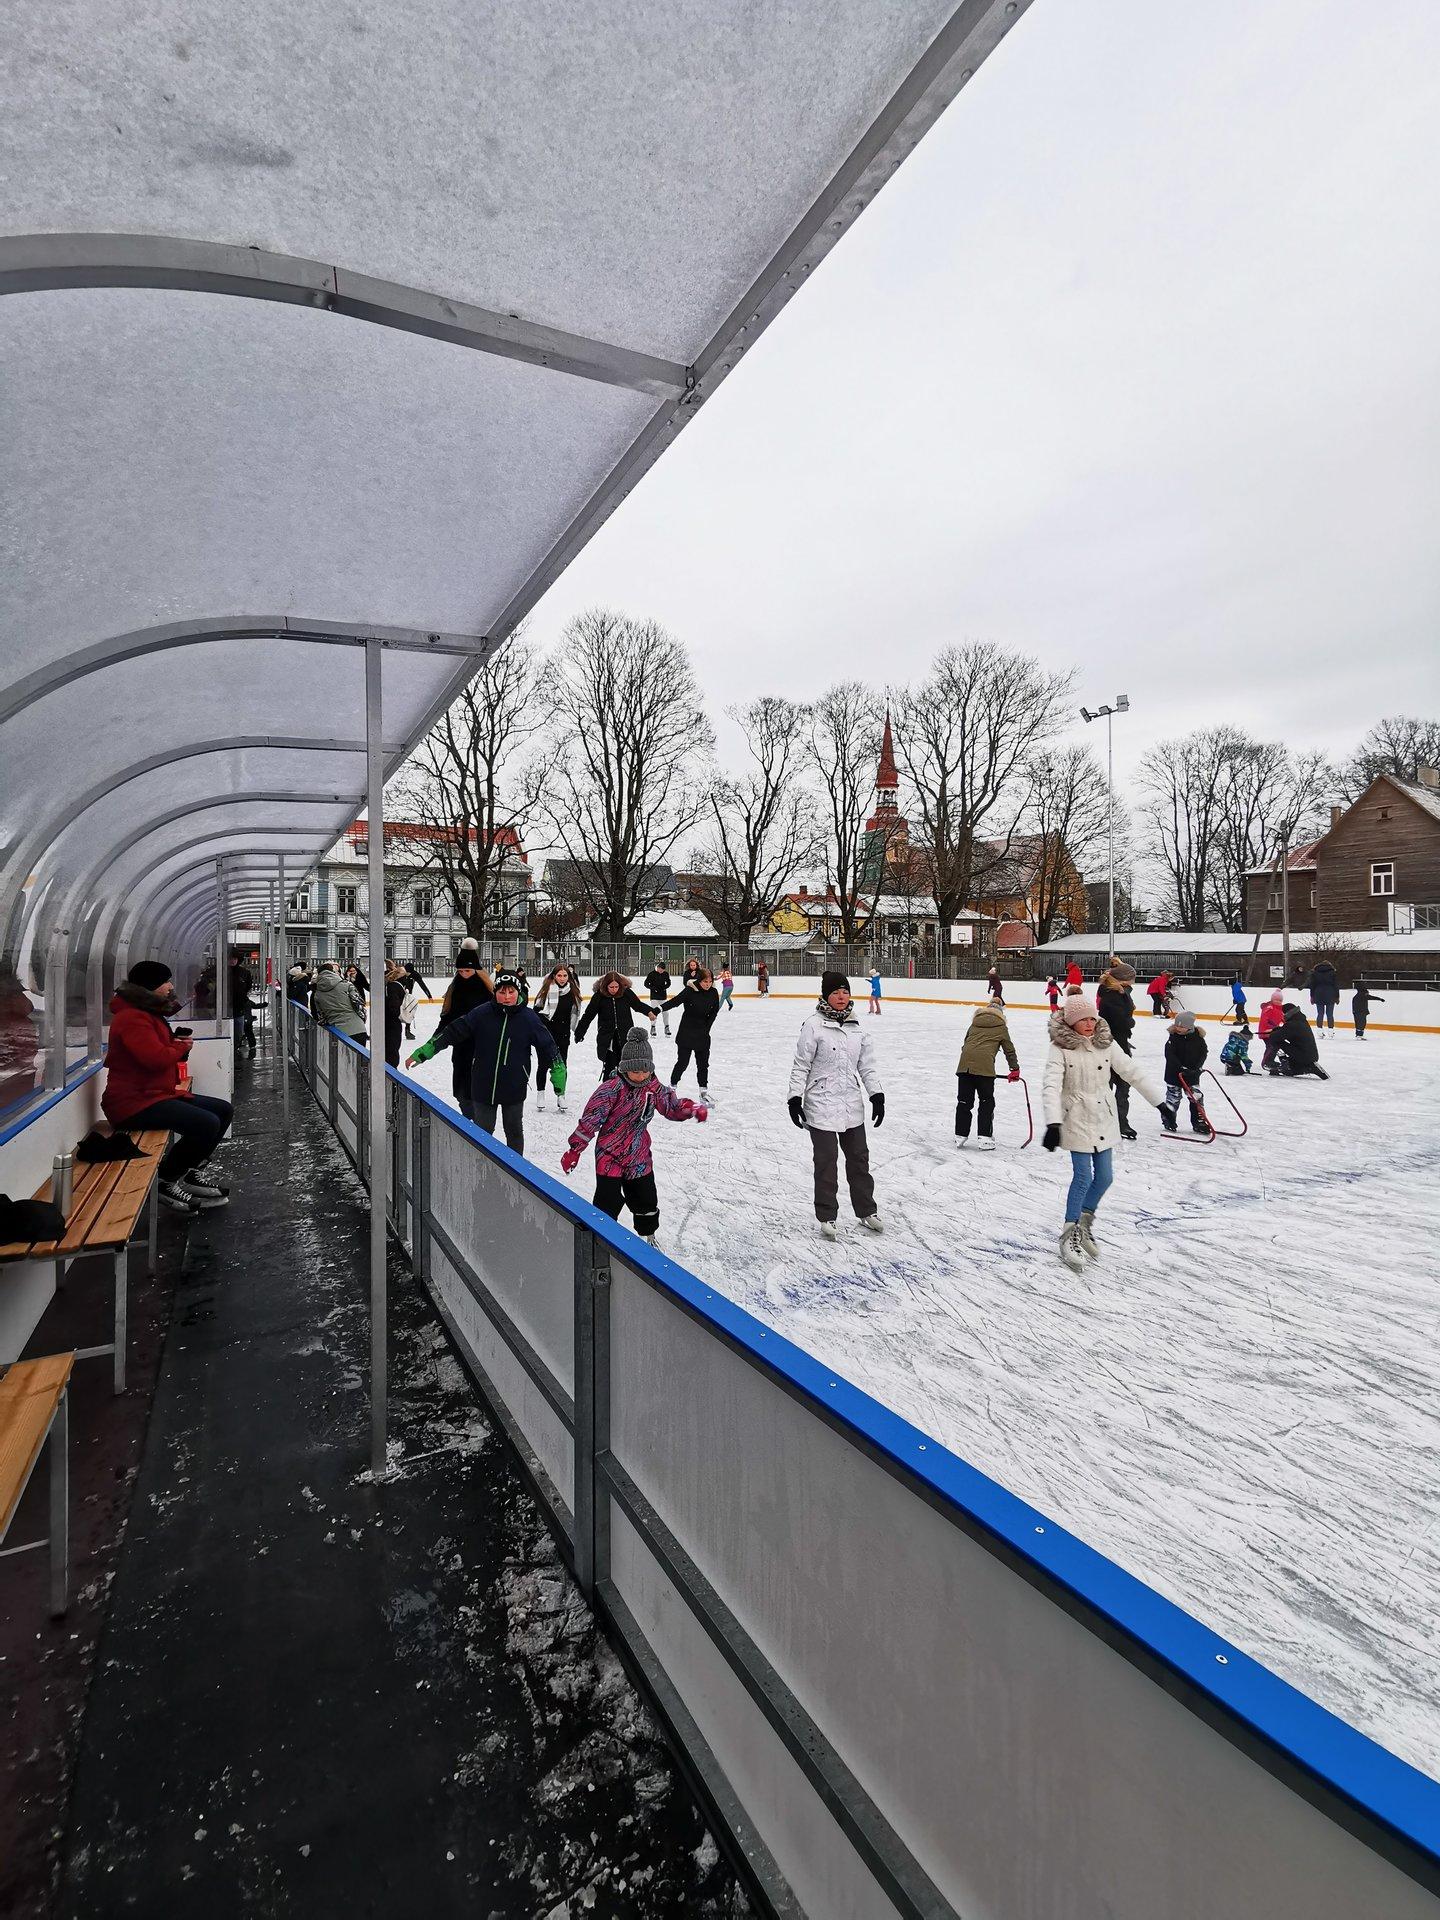 Ice skating rink in Pärnu